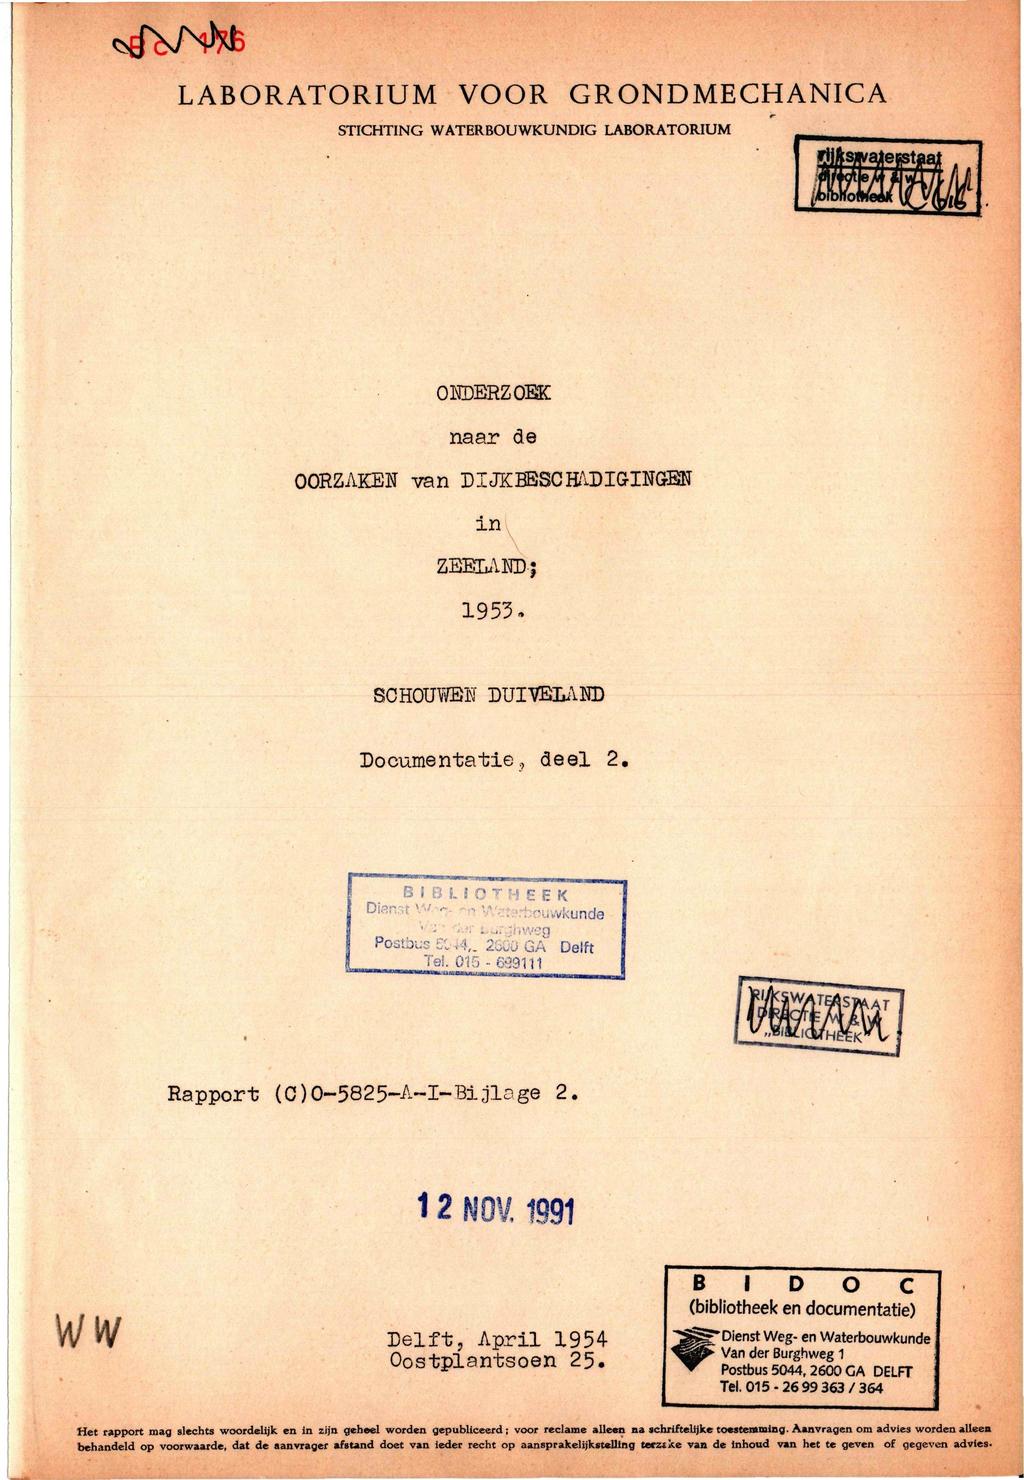 *rfvh)5të LABORATORIUM VOOR GRONDMECHANICA STICHTING WATERBOUWKUNDIG LABORATORIUM ONDERZOEK naar de OORZAKEN van DIJKBESCRADIGINCrBN in ZBBDANDj 1953. SCHOUWEN DUIVELAHD Documentatie, deel 2.